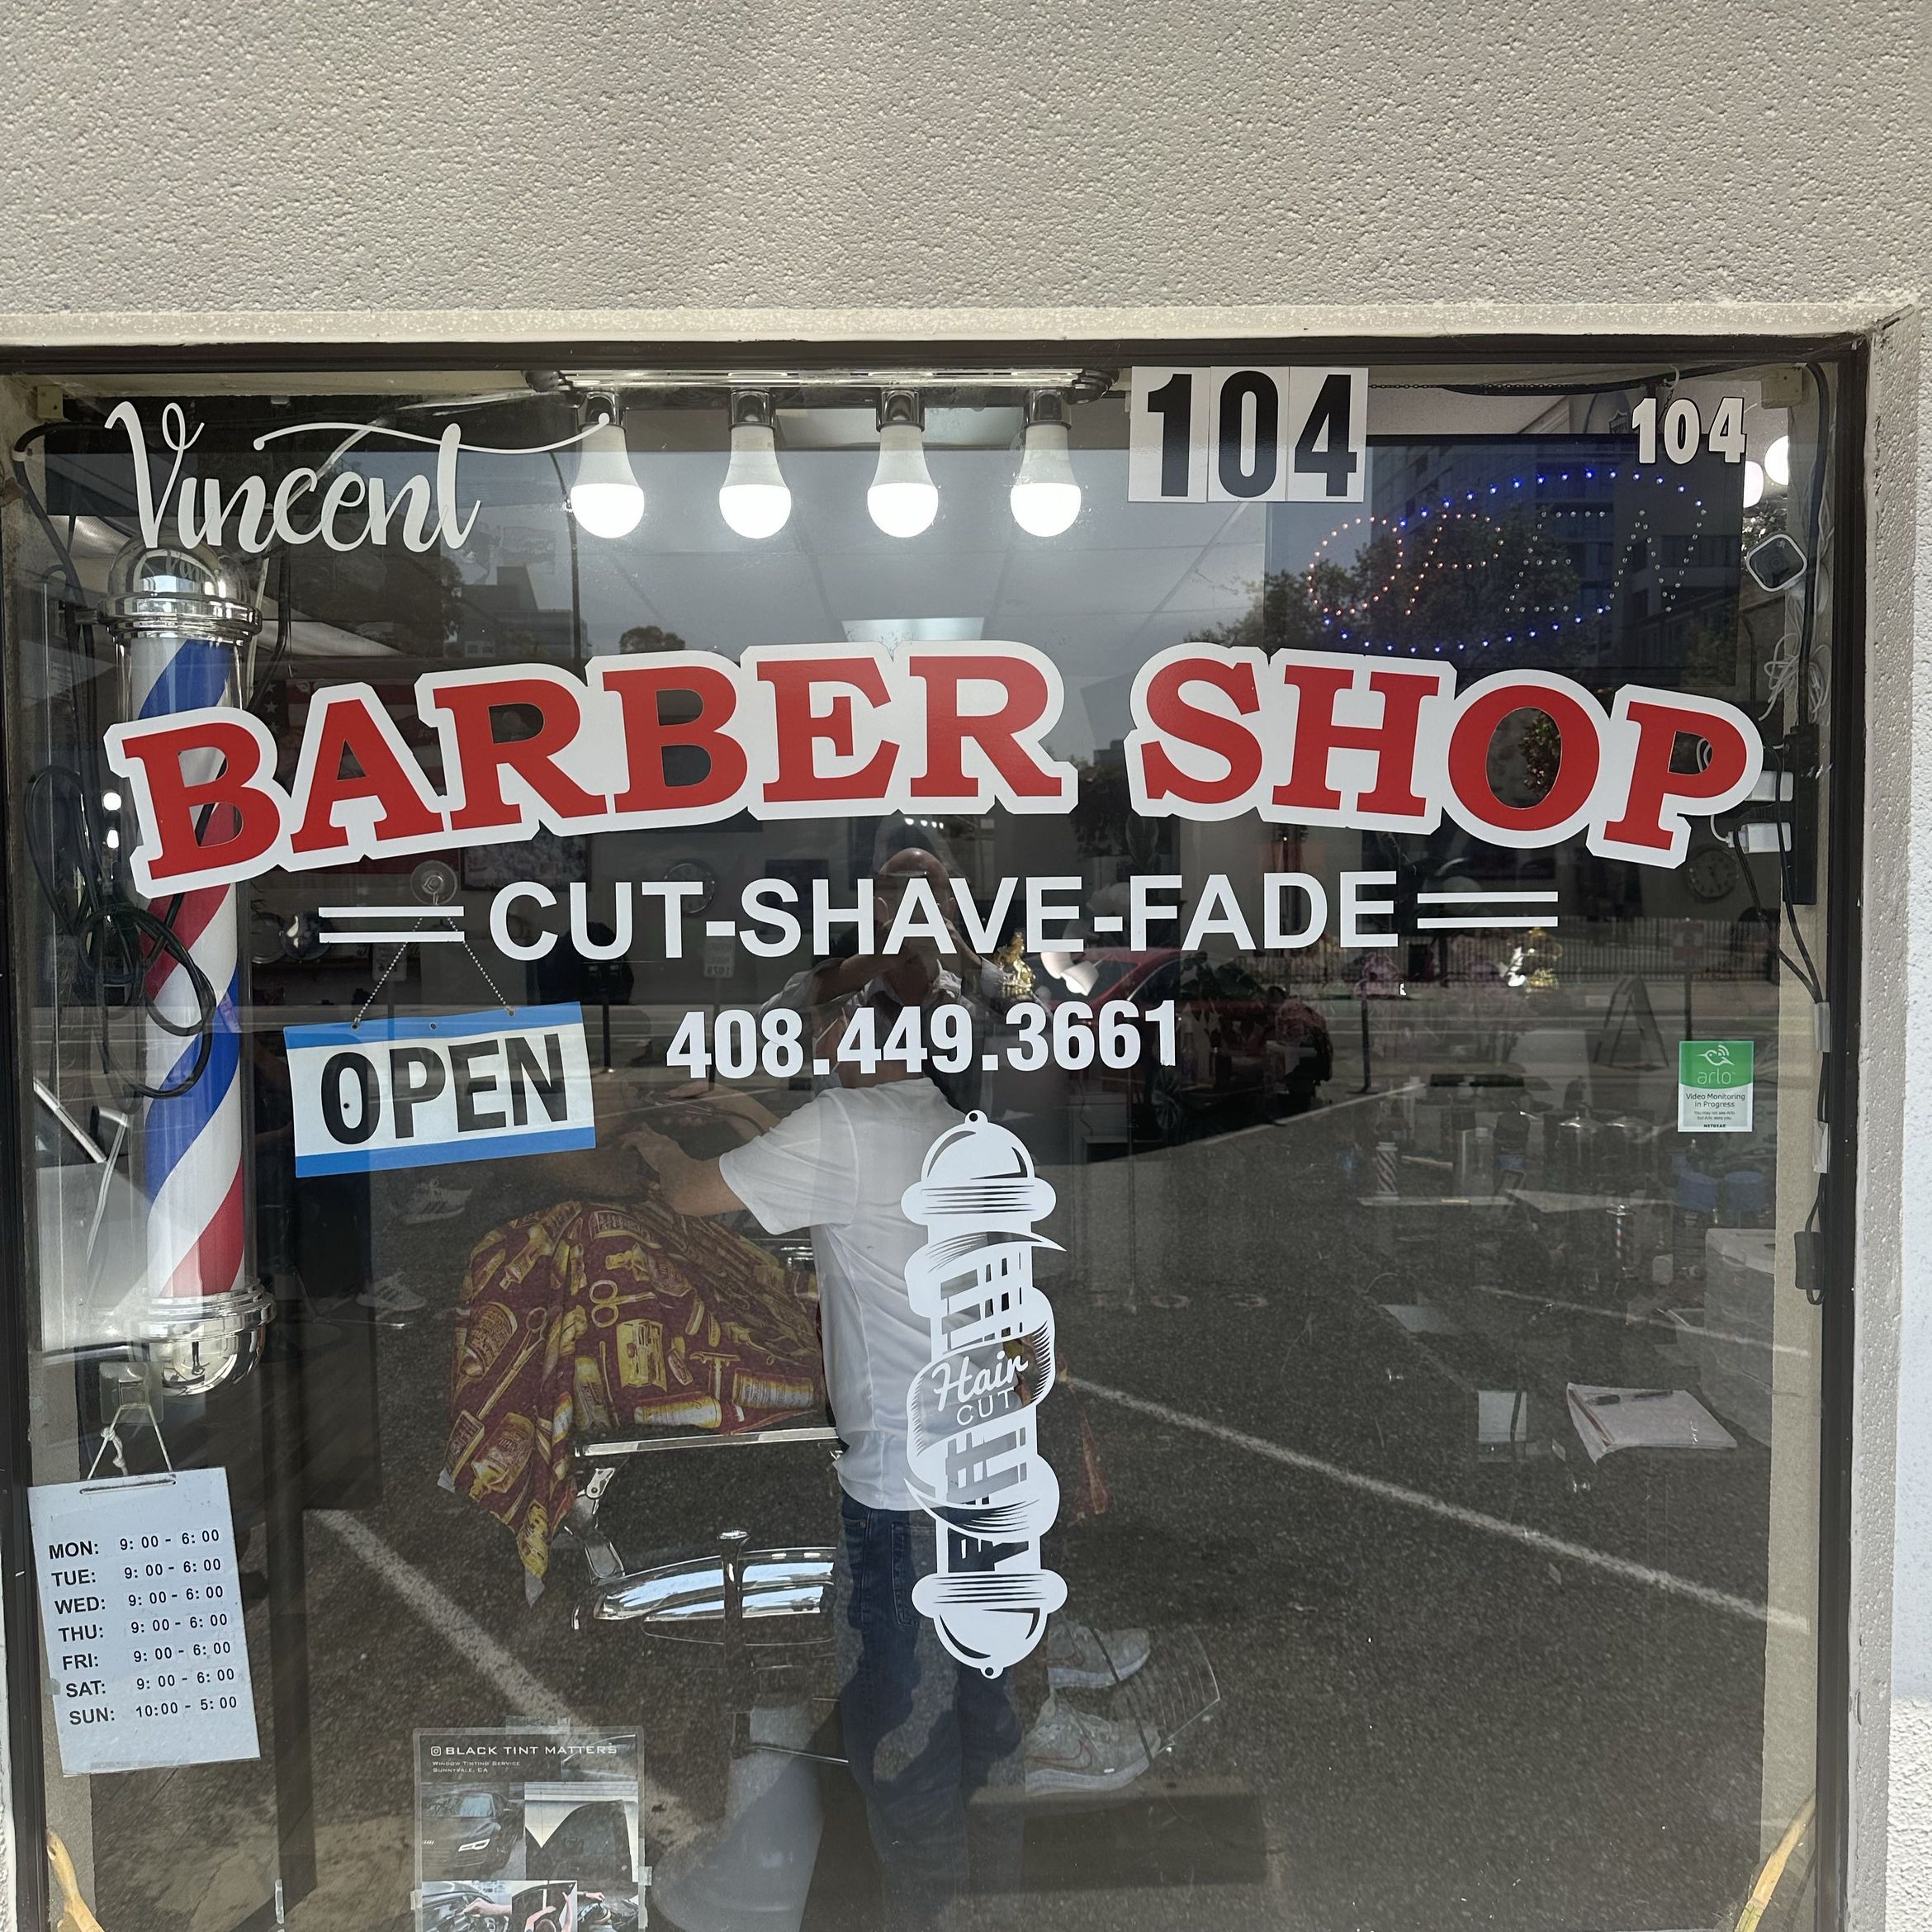 Vincent's Barber Shop, 115 N 4th St, Suite 104, San Jose, 95112